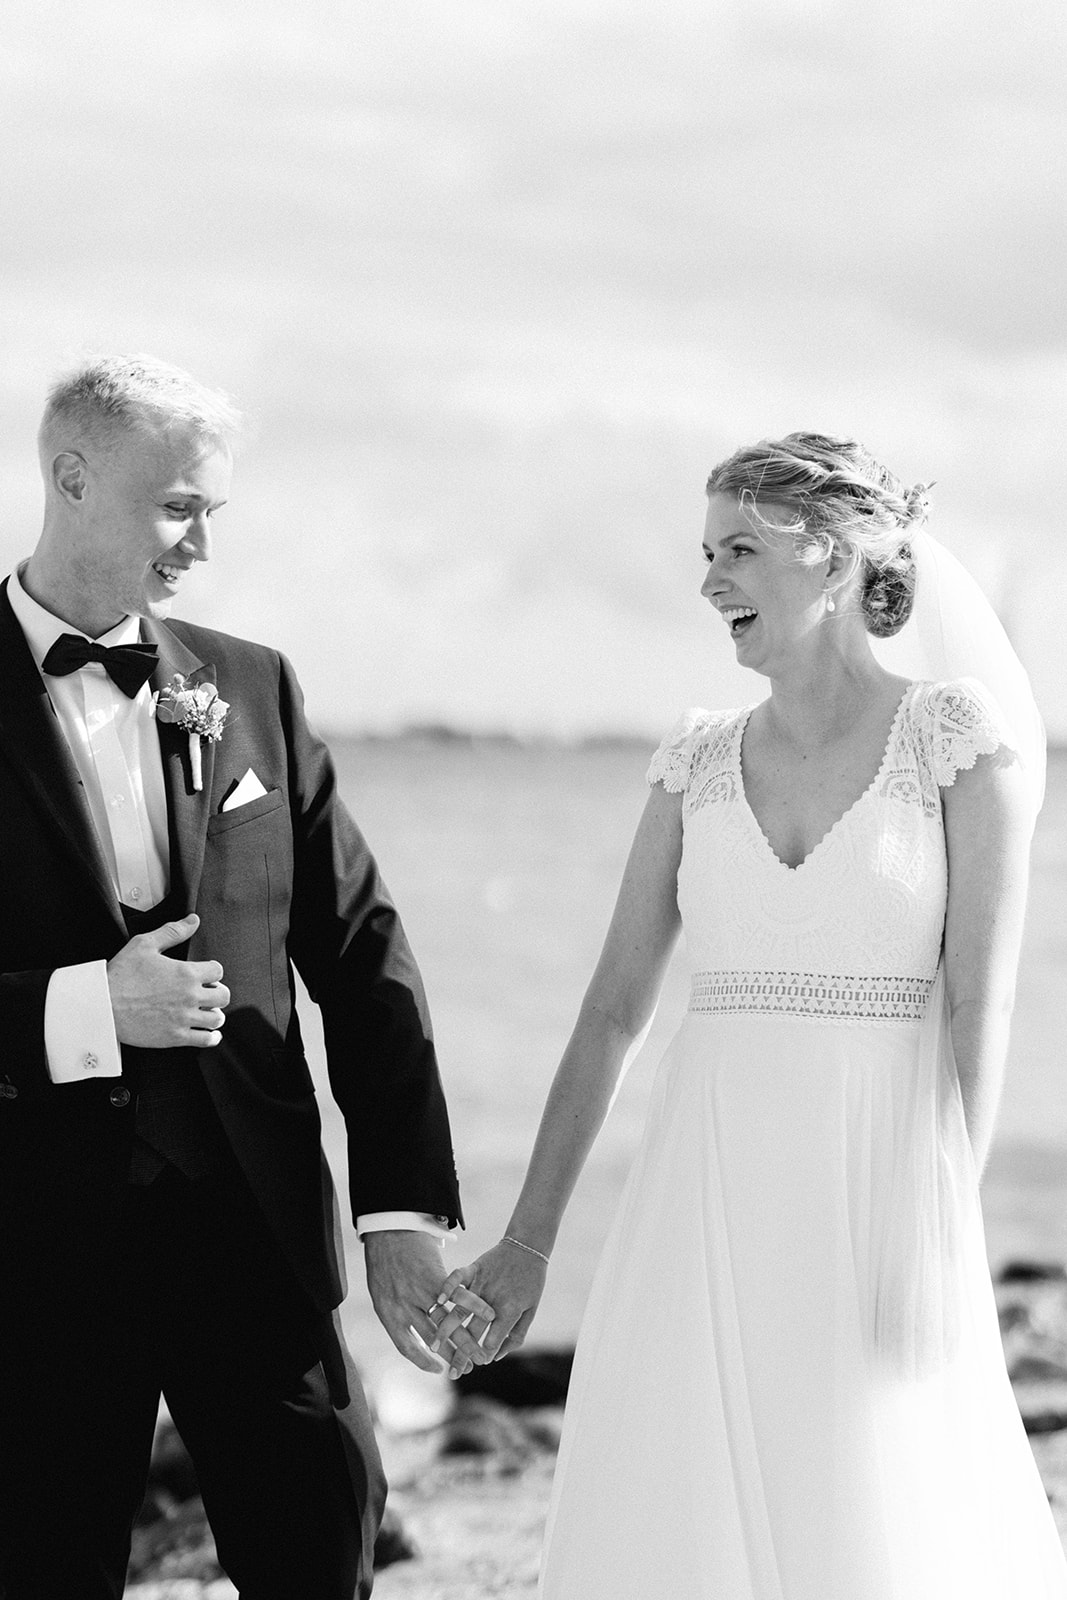 Stunning Aarhus beach wedding photo featuring happy couple